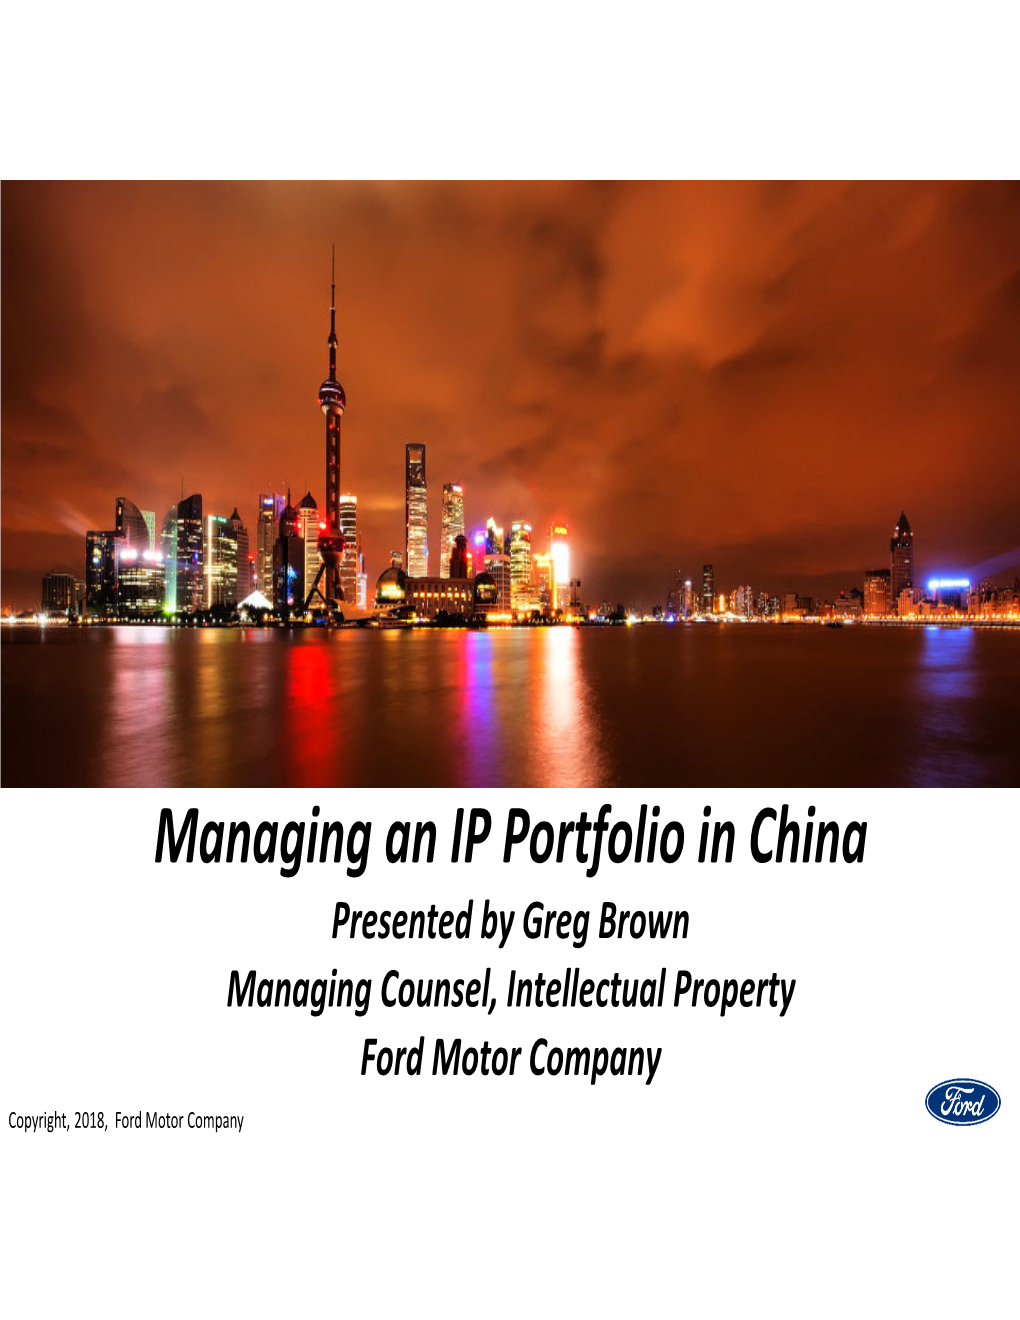 Managing an IP Portfolio in China, Greg Brown